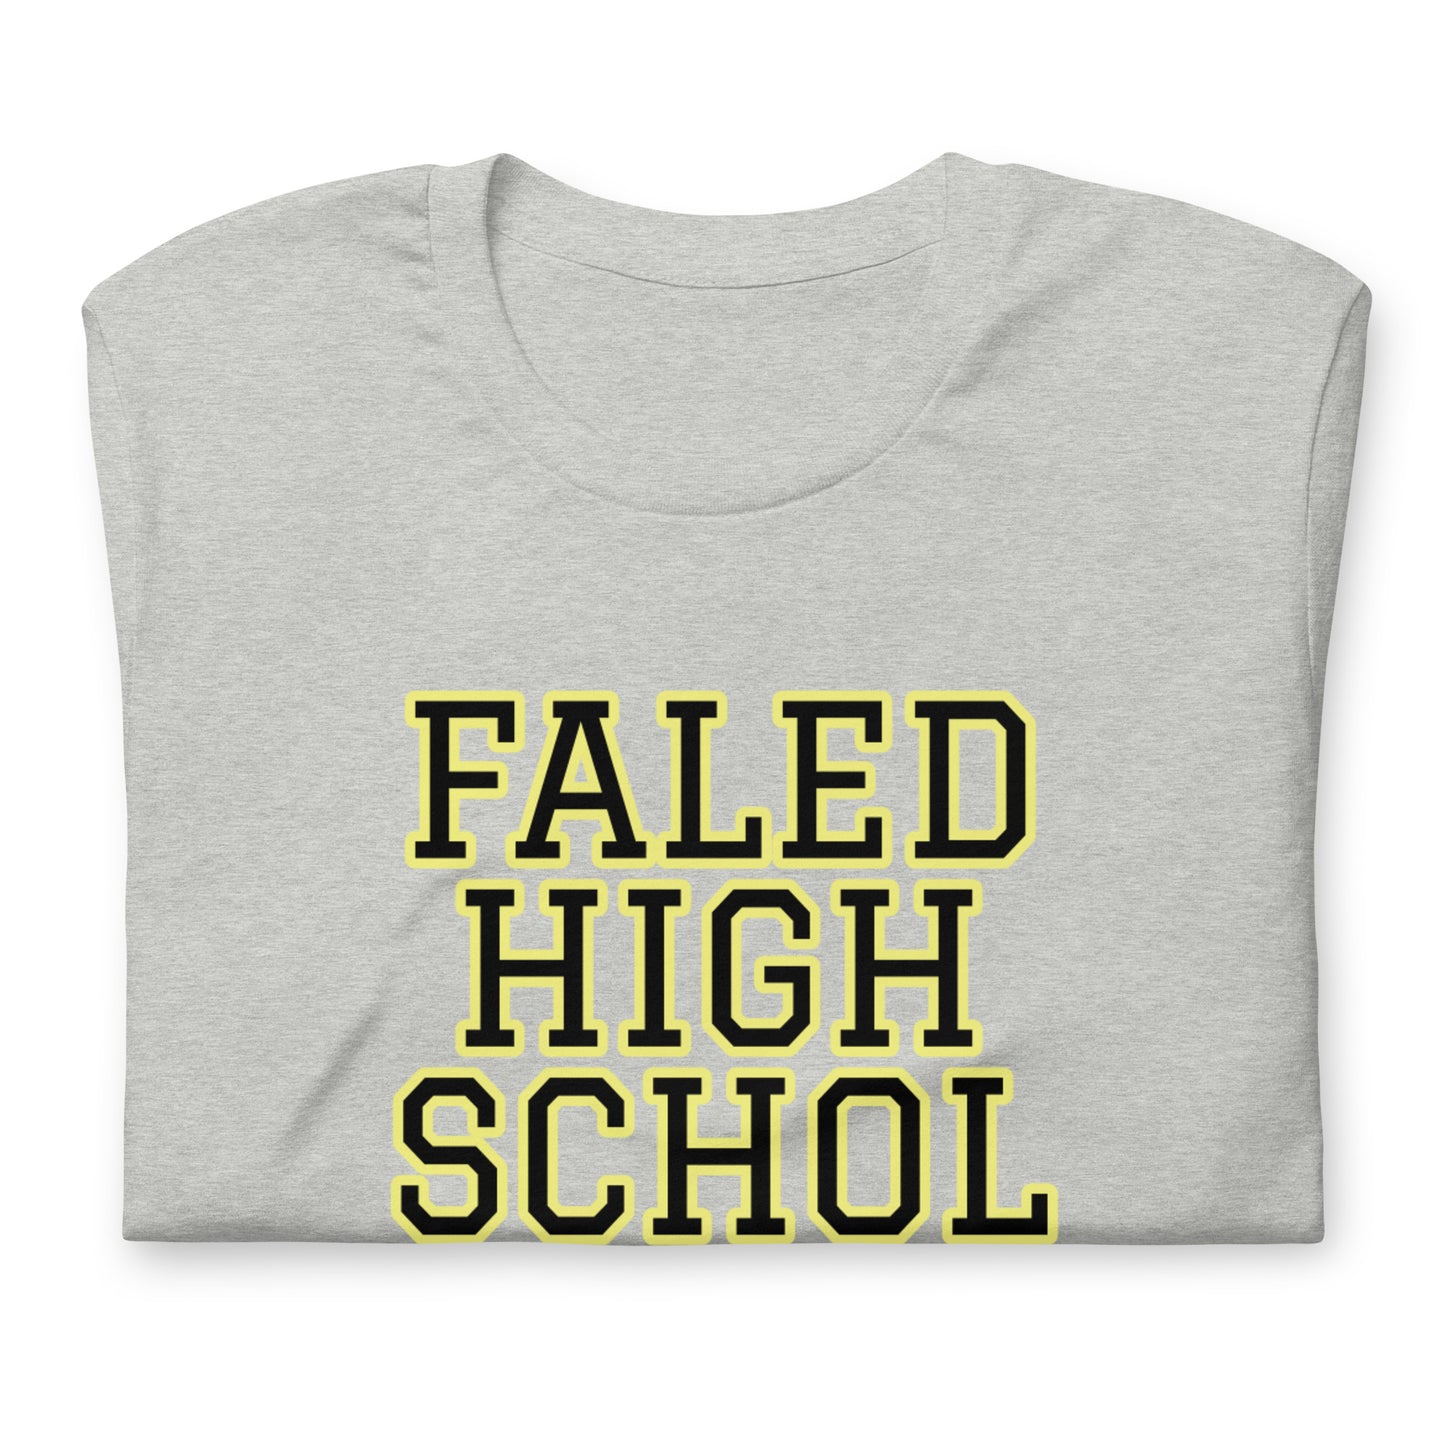 Failed high school